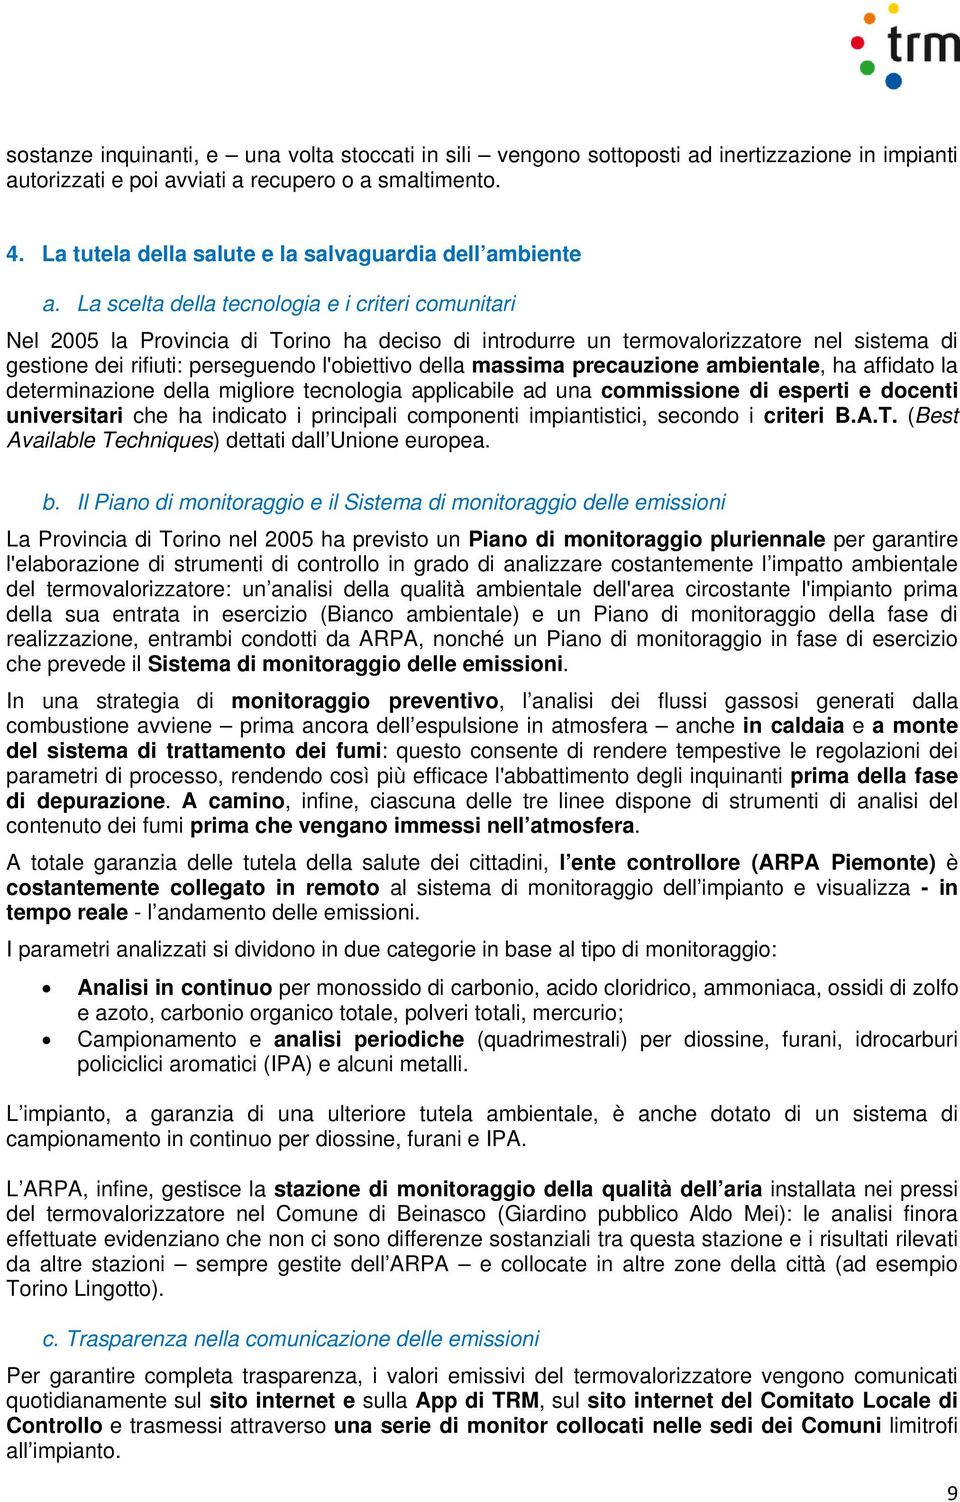 La scelta della tecnologia e i criteri comunitari Nel 2005 la Provincia di Torino ha deciso di introdurre un termovalorizzatore nel sistema di gestione dei rifiuti: perseguendo l'obiettivo della